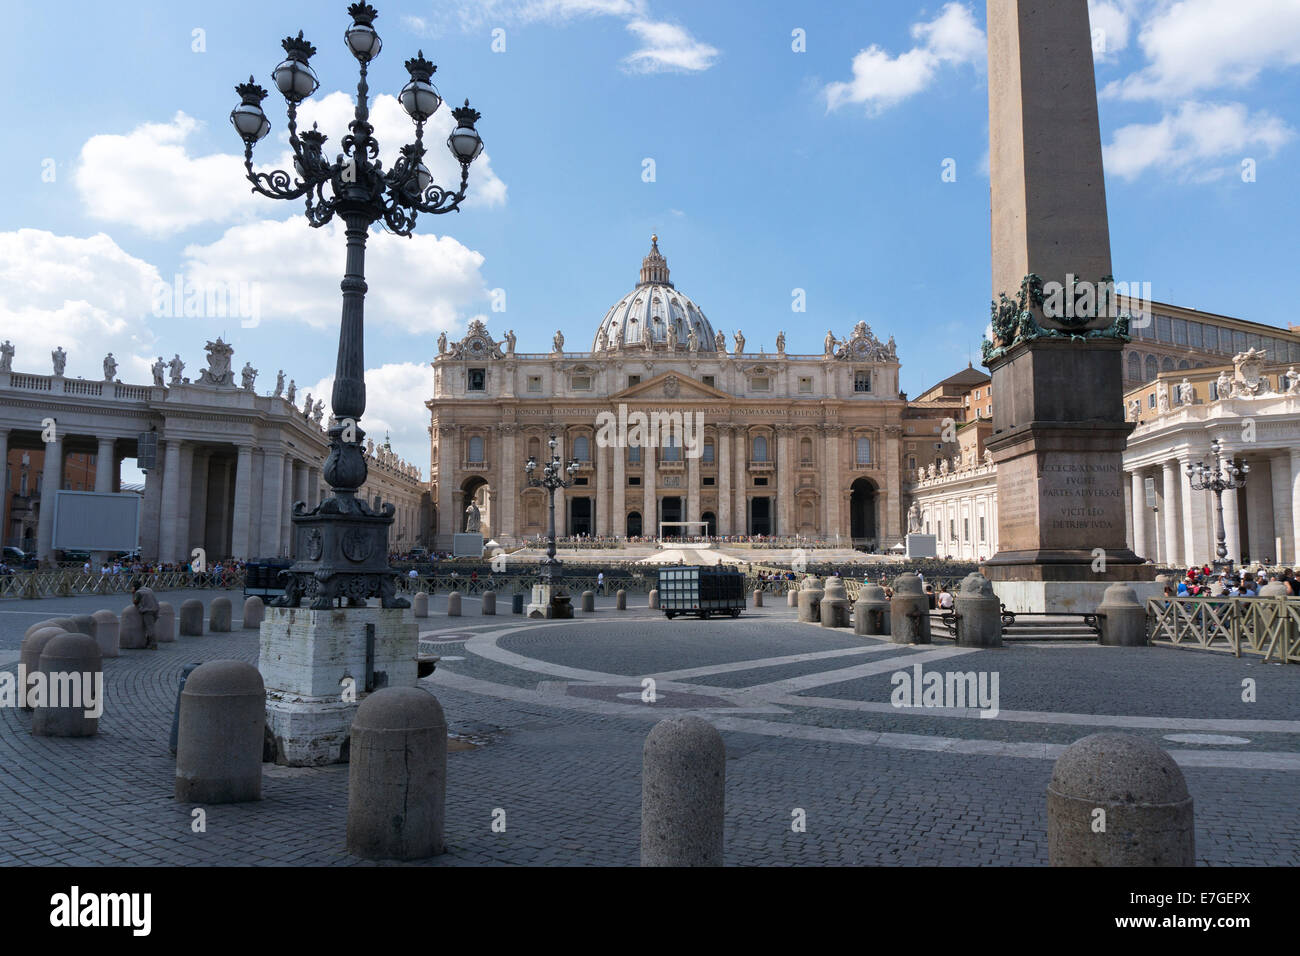 Città del Vaticano: Piazza San Pietro con obelisco e Basilica di San Pietro. Foto dal 4 settembre 2014. Foto Stock